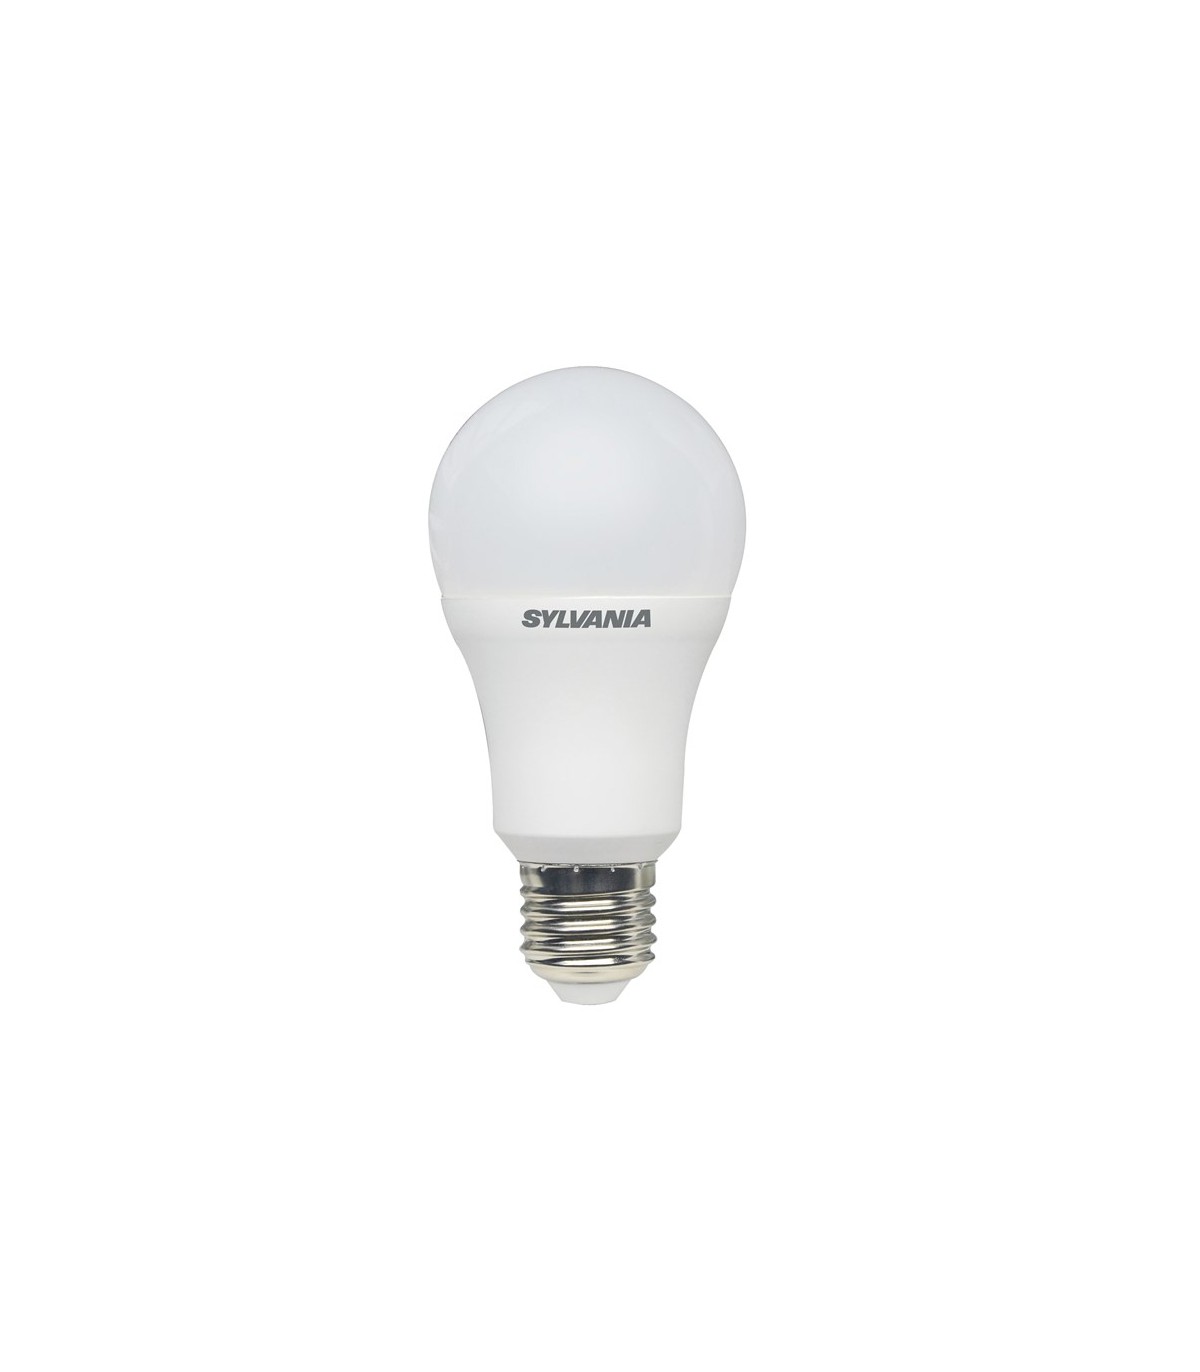 Philips ampoule LED Standard E27 50W Blanc Chaud Calotte Argentée,  Compatible Variateur, Verre